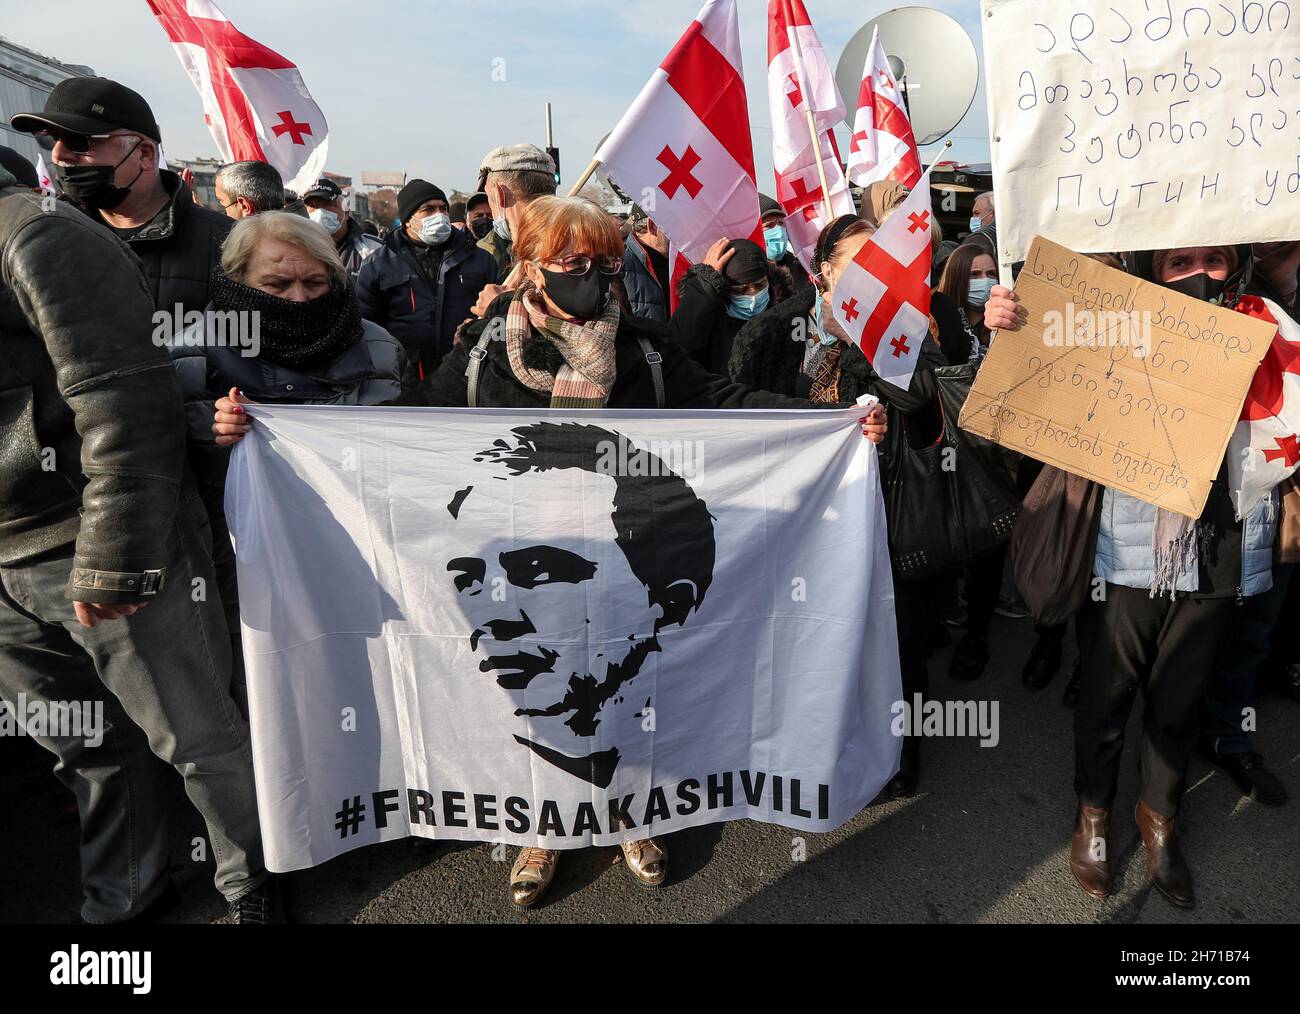 Una mujer sostiene una bandera que representa al ex presidente encarcelado Mikheil Saakashvili durante una manifestación en su apoyo en Tbilisi, Georgia, el 19 de noviembre de 2021. REUTERS/Irakli Gedenidze Foto de stock